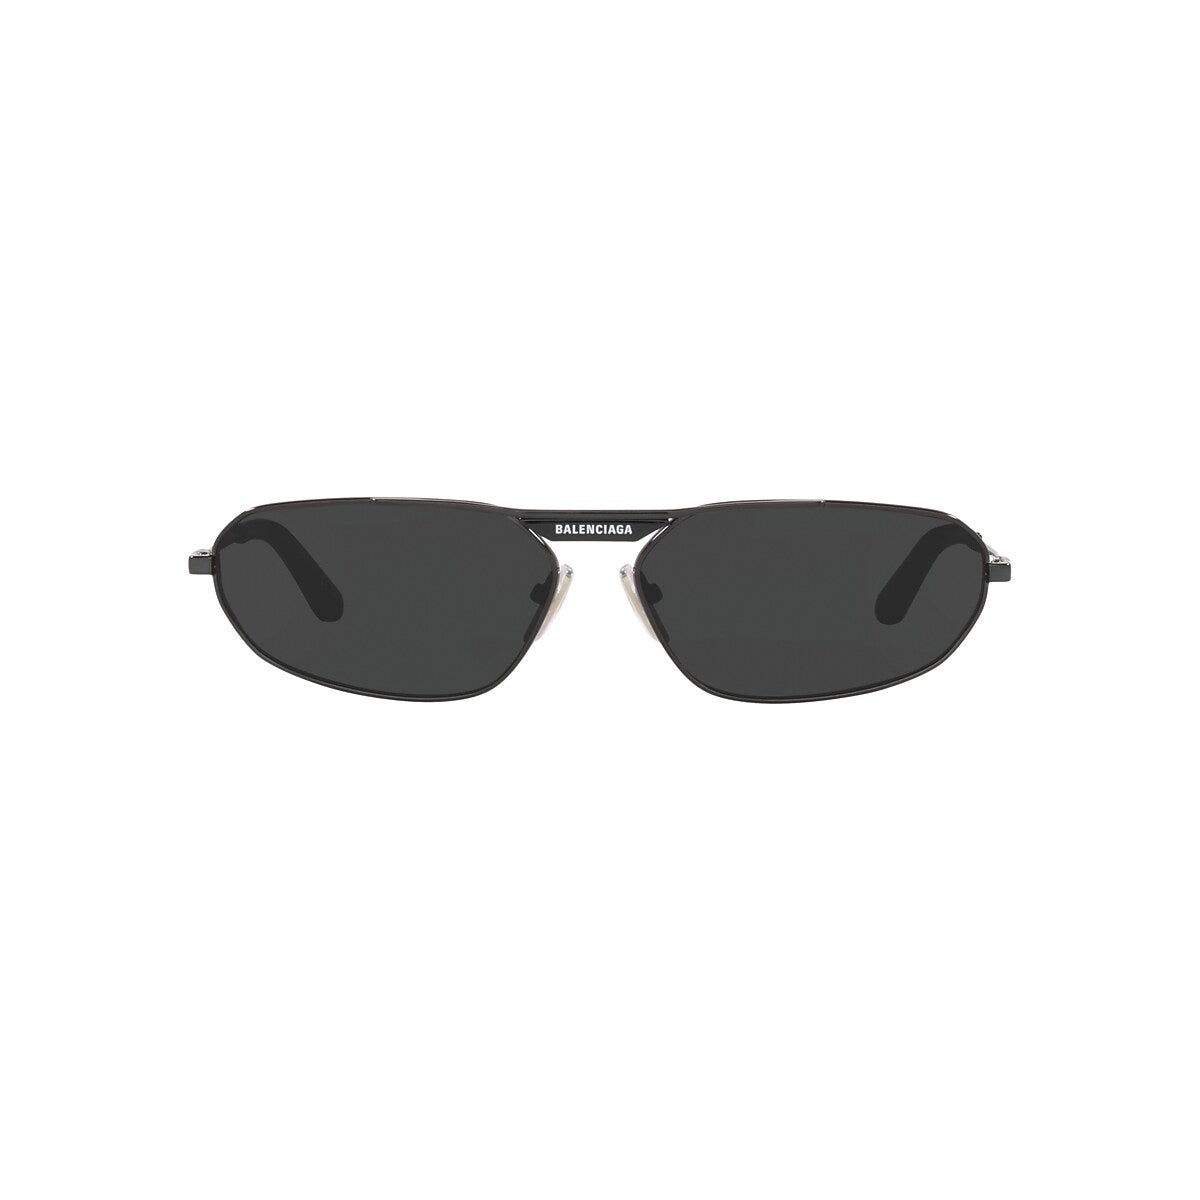 BALENCIAGA BB0245S Grey - Men Sunglasses, Grey Lens